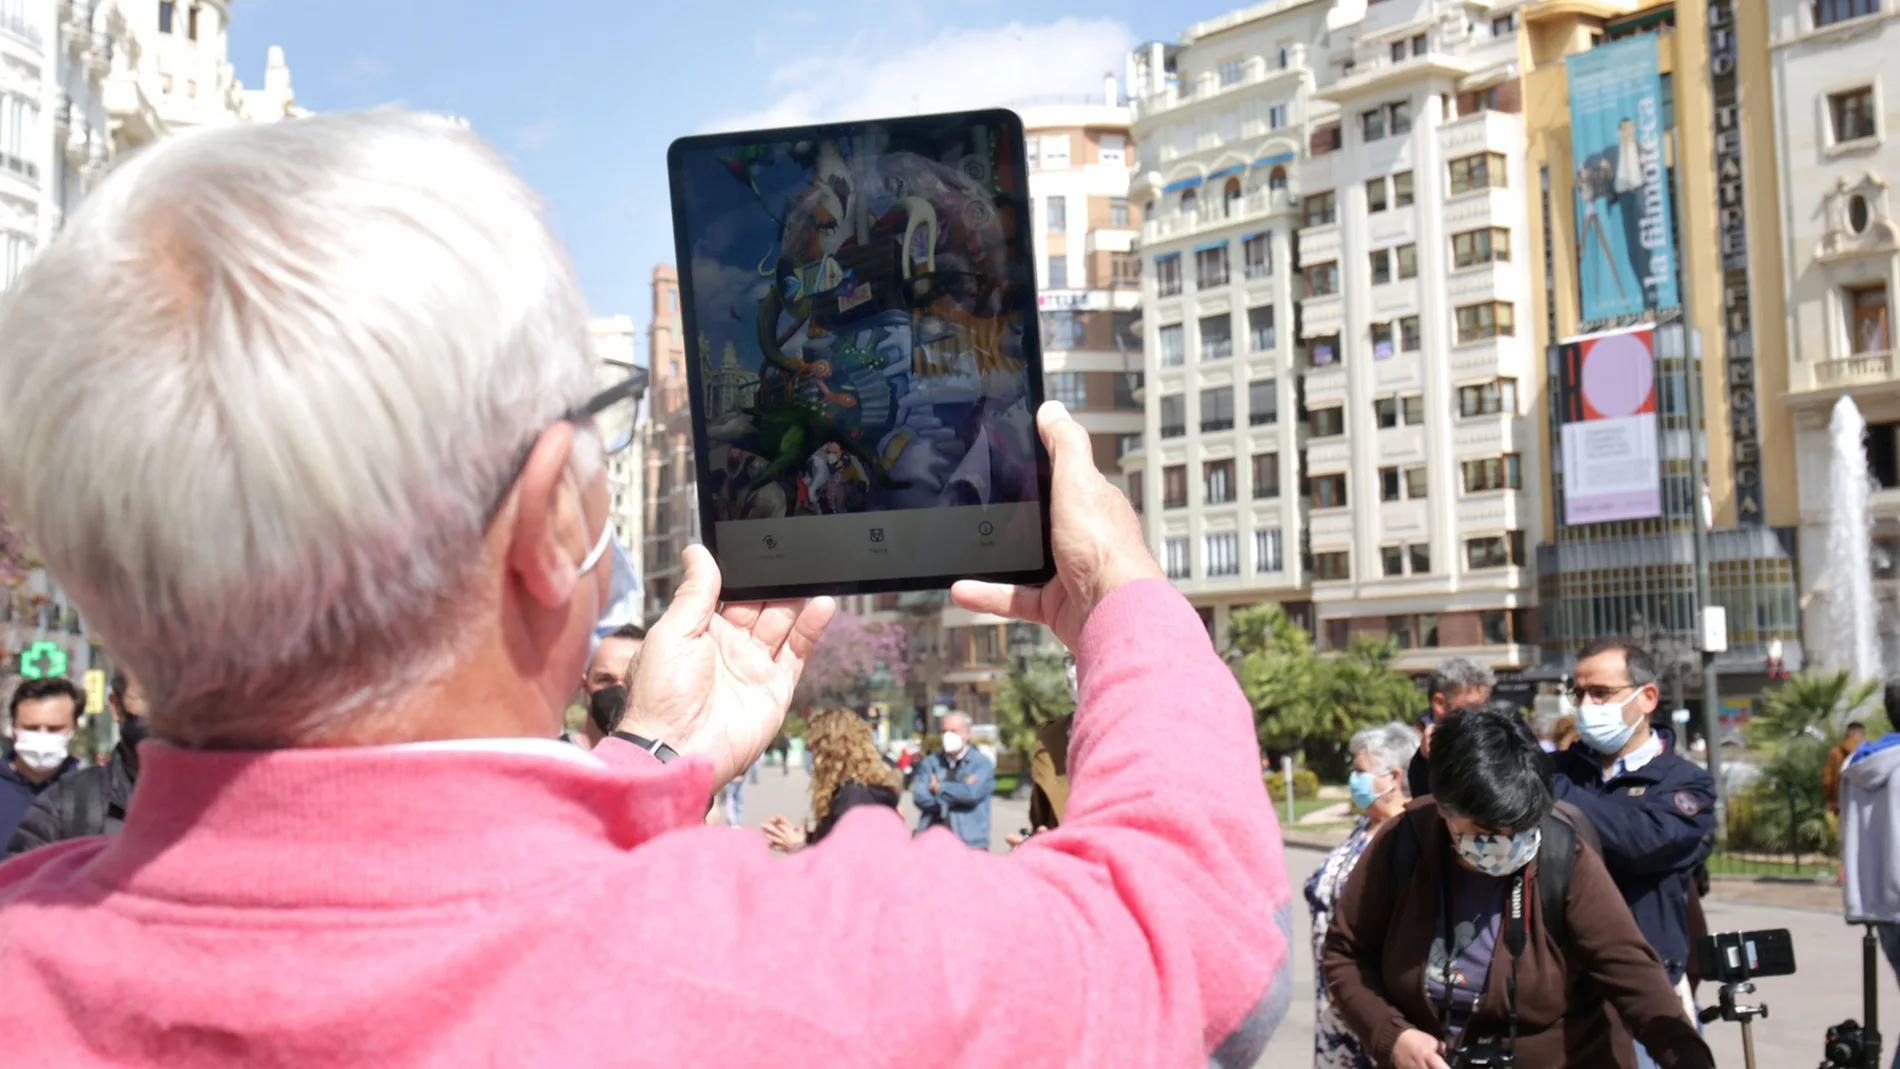 El alcalde de Valencia, Joan Ribó, contempla la falla que se hubiera plantado en la plaza del Ayuntamiento y que la pandemia ha impedido. Una app de realidad aumentada permite contemplar el monumento.